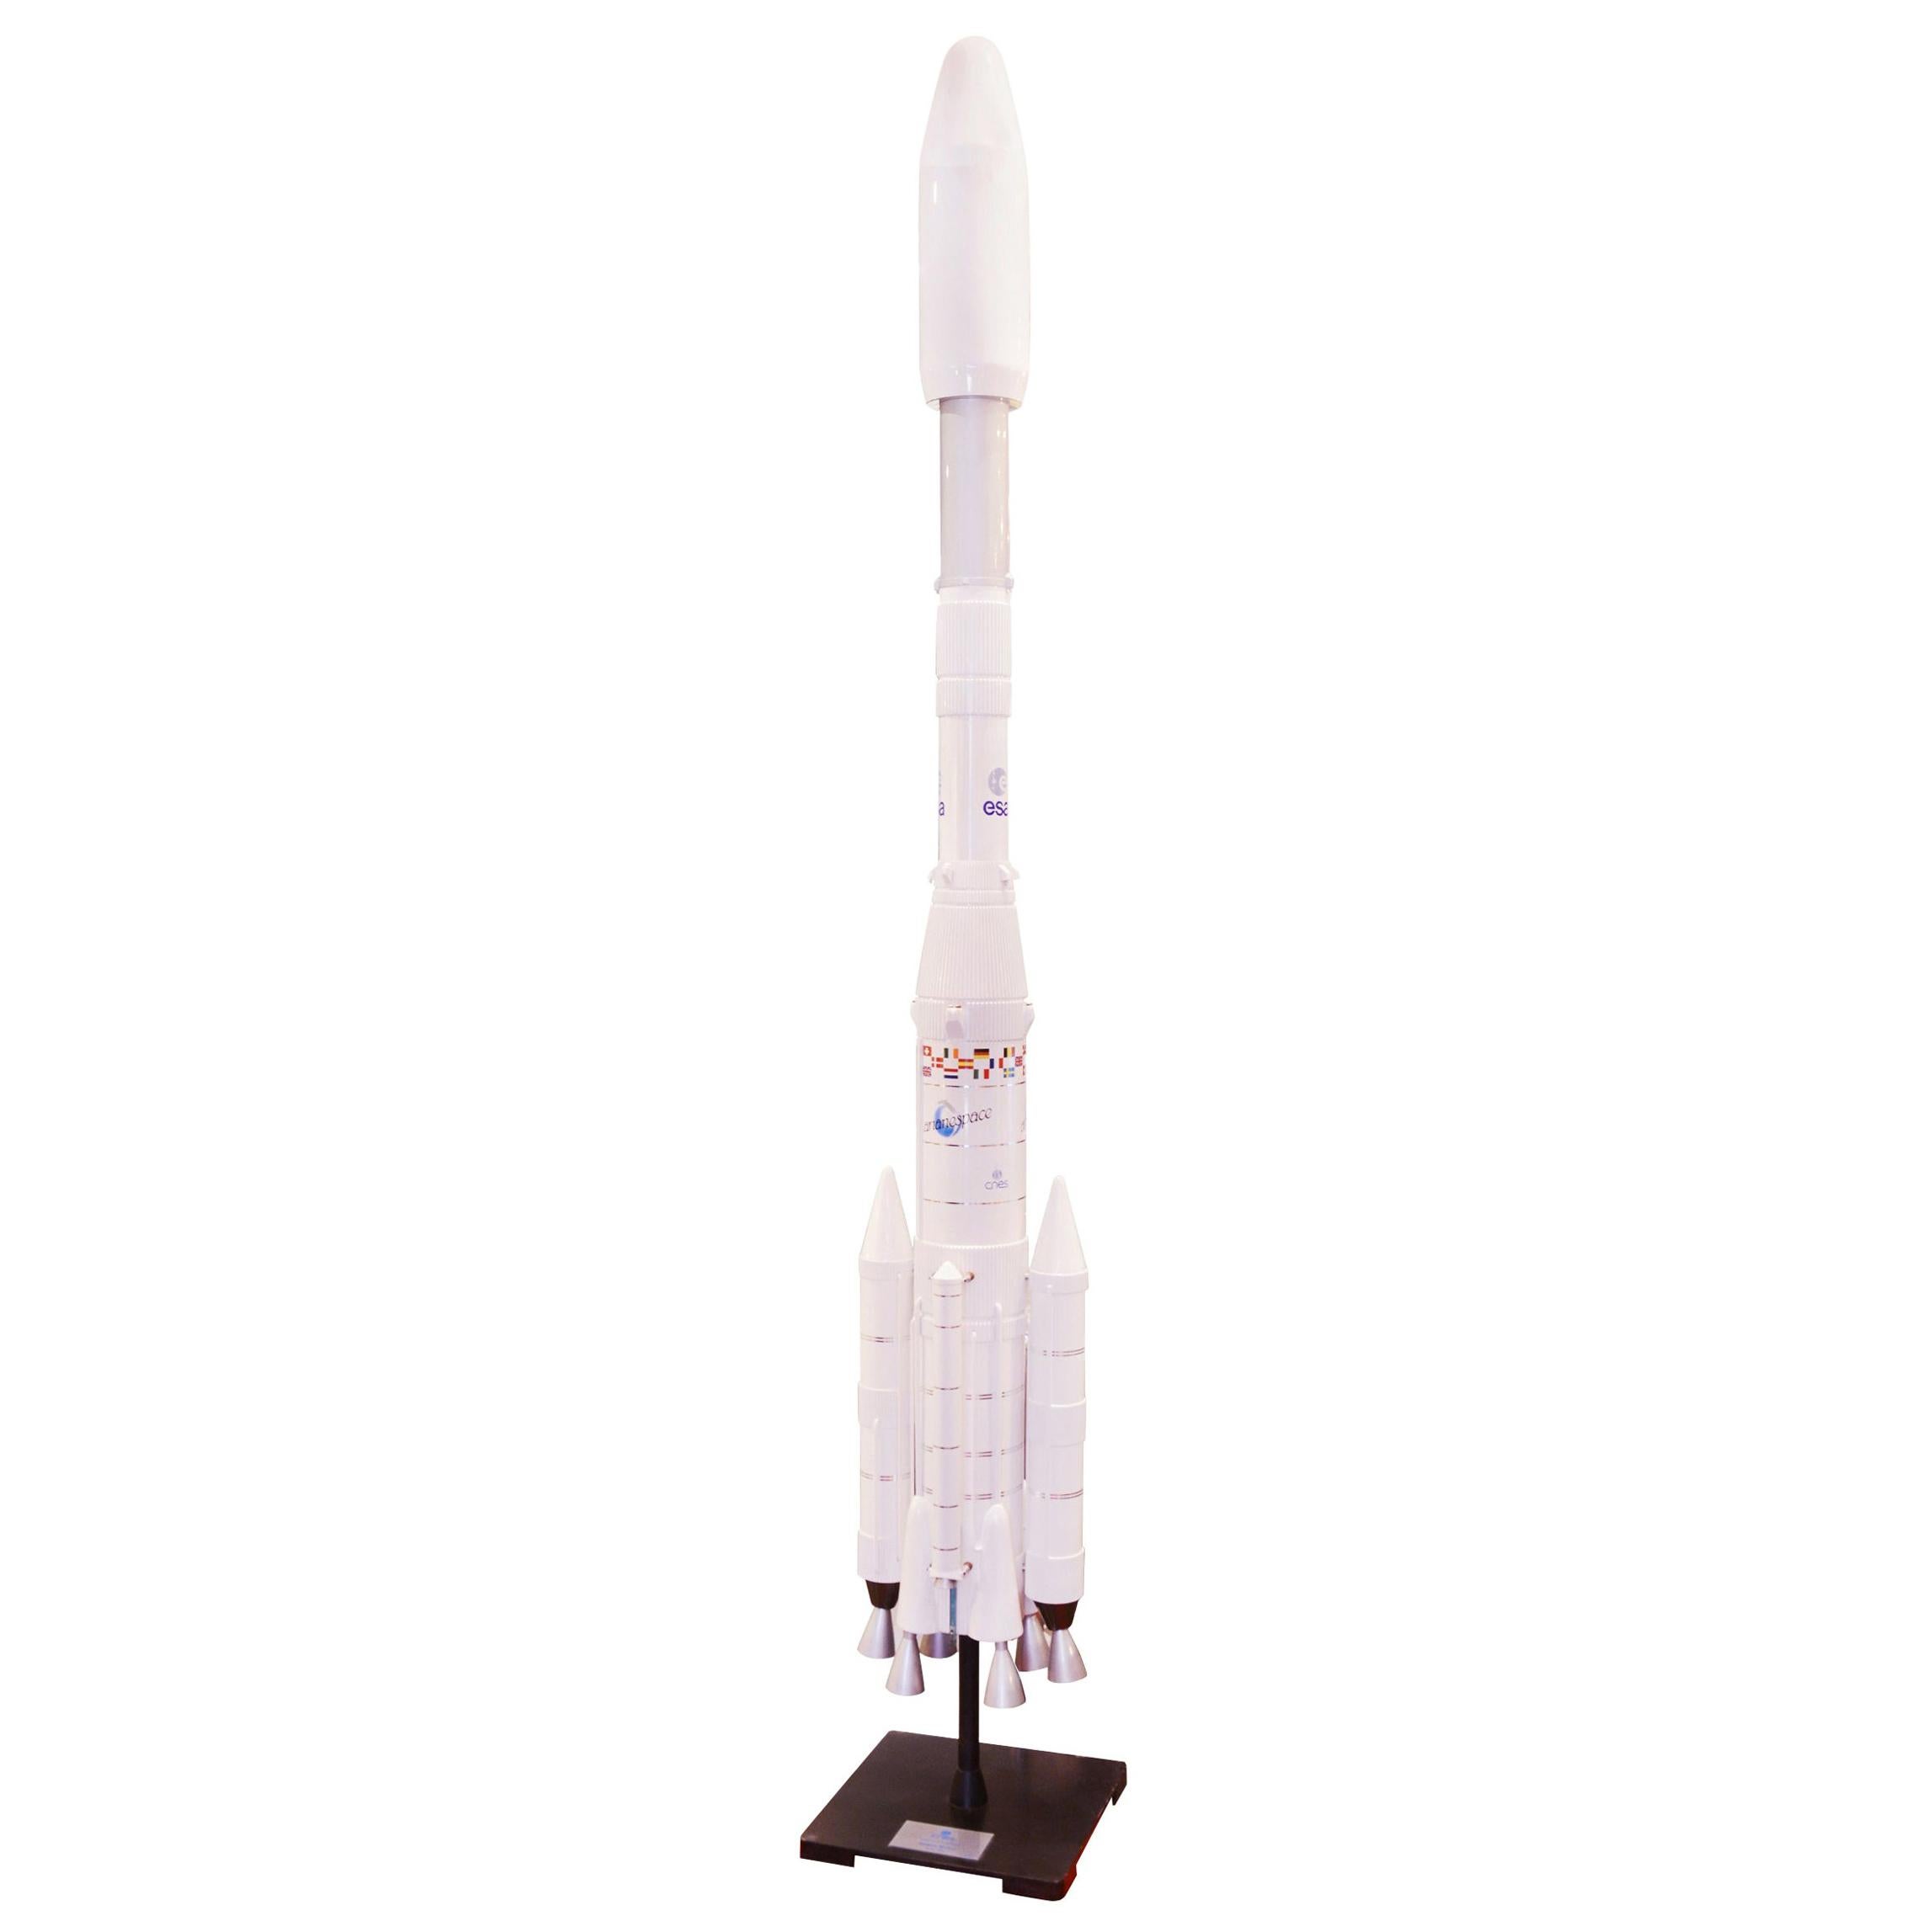 Ariane IV 44lp Rocket Model on 1/20em Scale For Sale